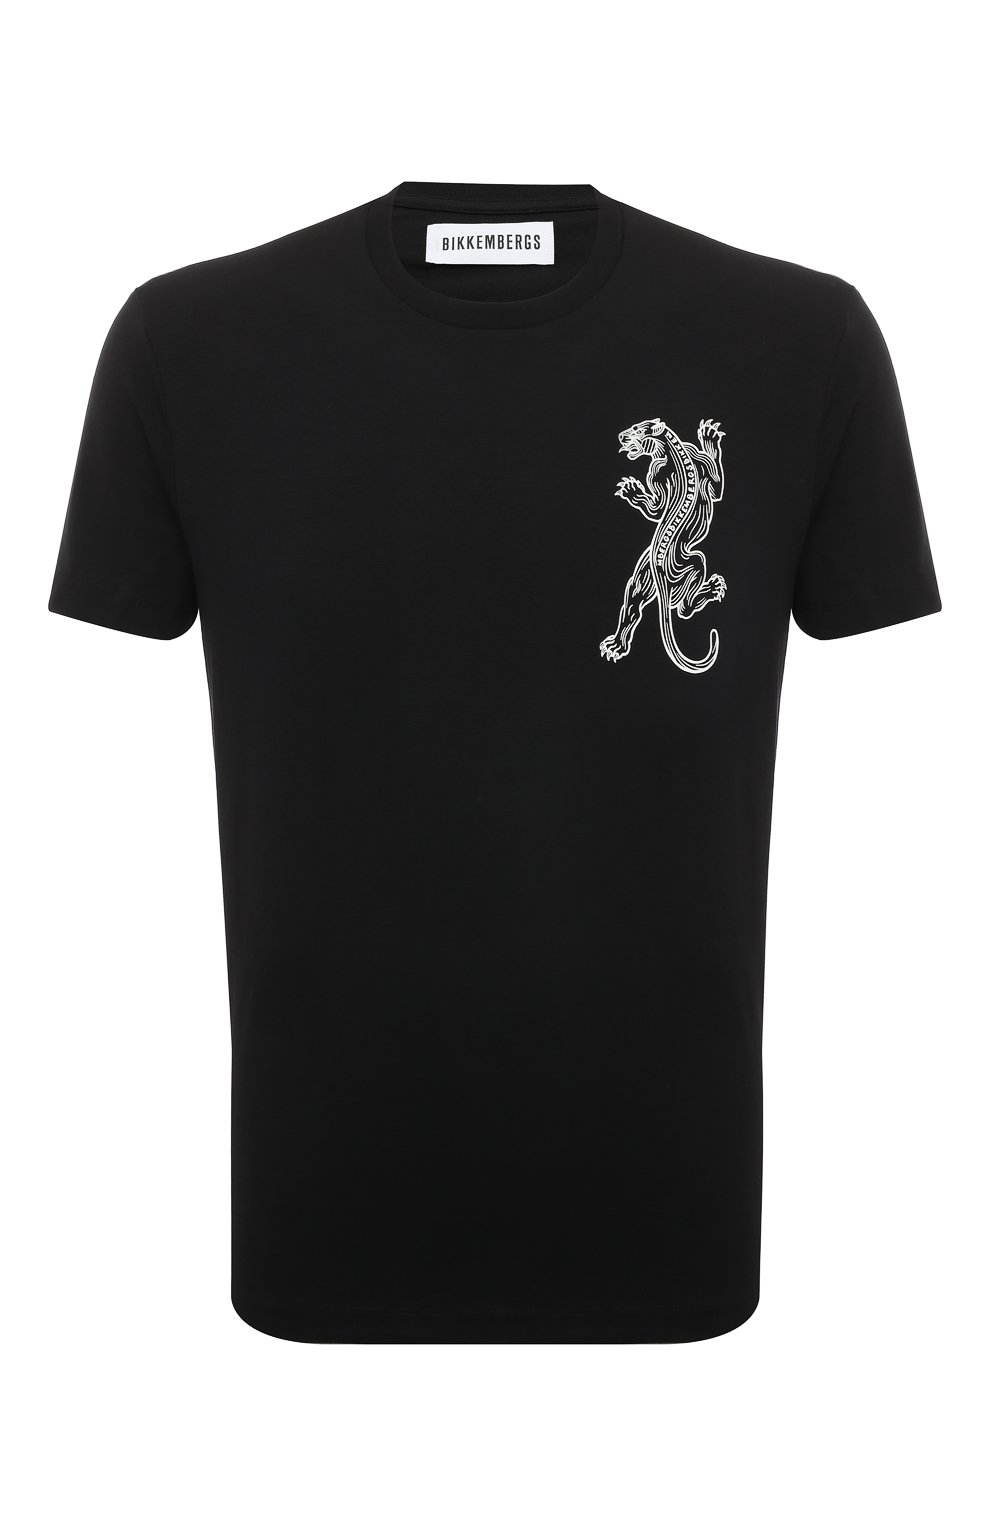 Хлопковая футболка Dirk Bikkembergs C 4 101 3E E 1811, цвет чёрный, размер 54